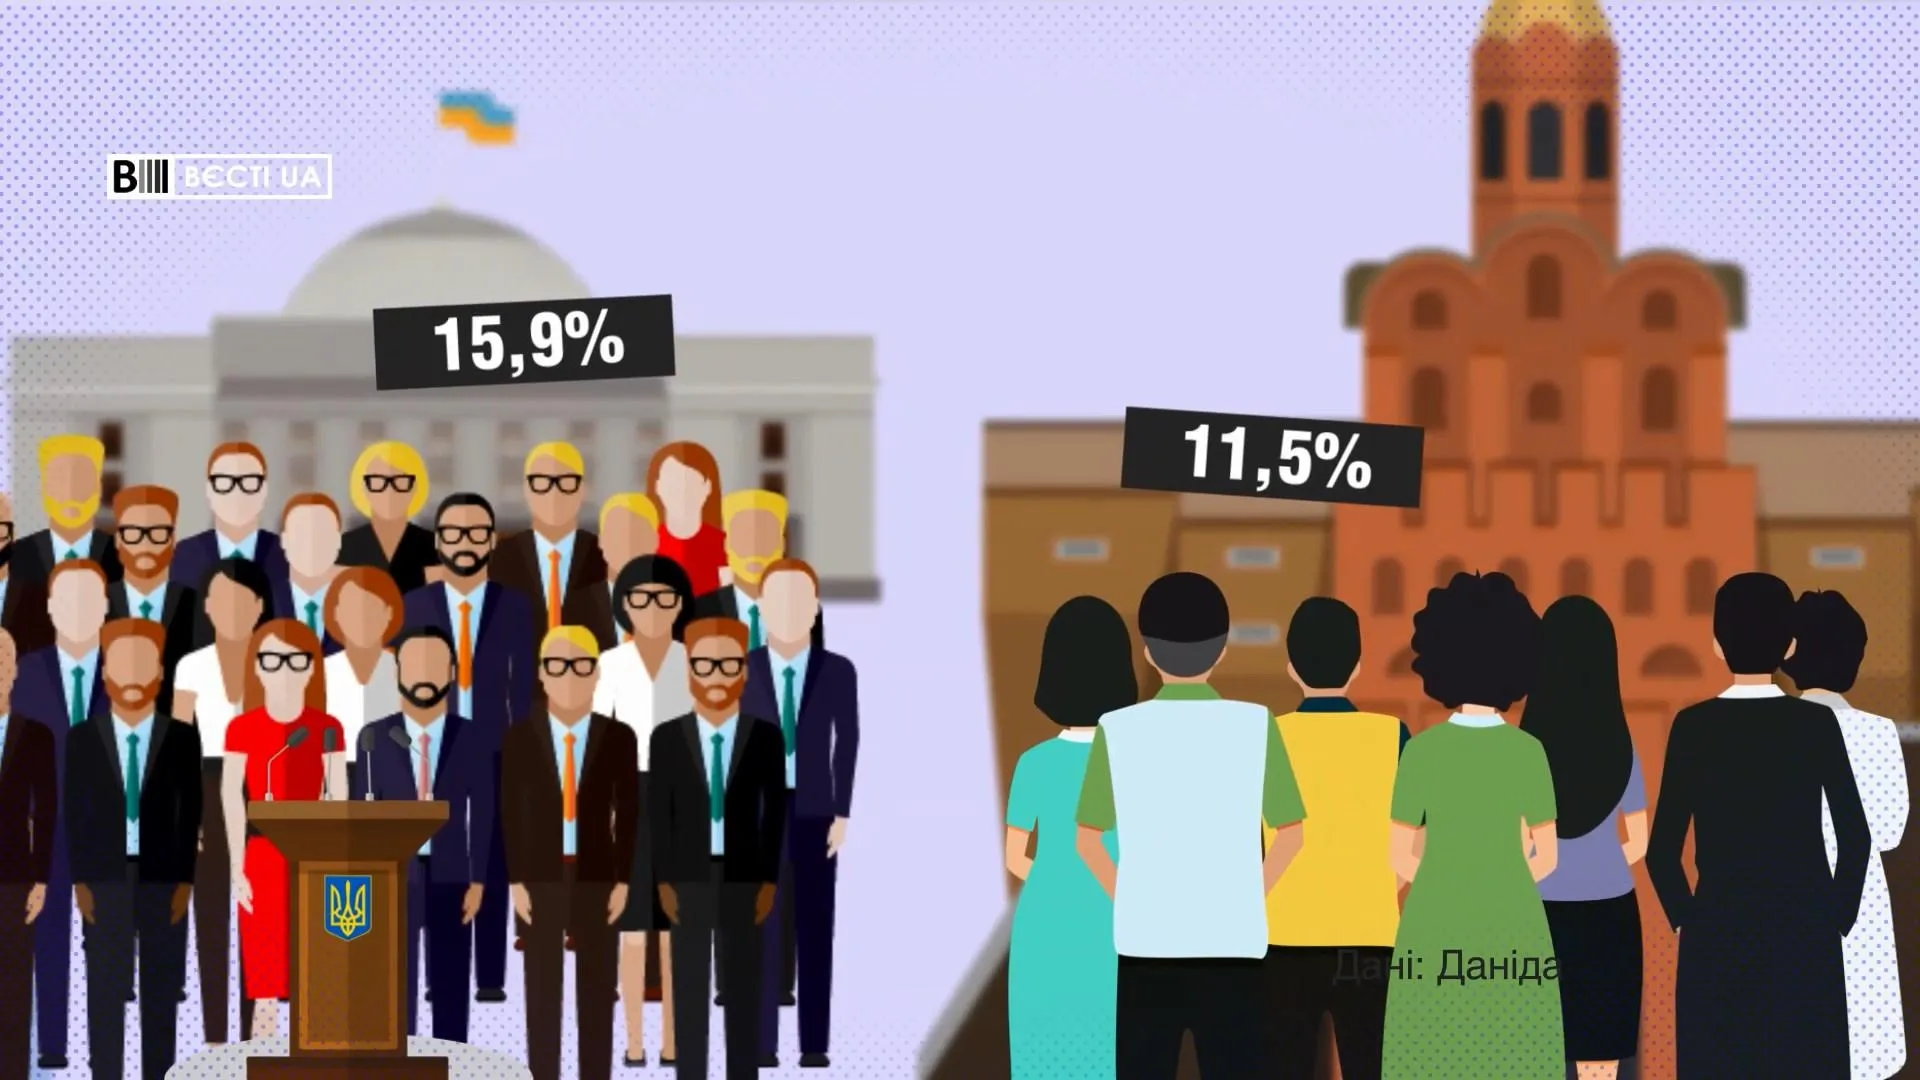 Близько 16% знають про Томос від політиків, ще 11,5% – від оточуючих